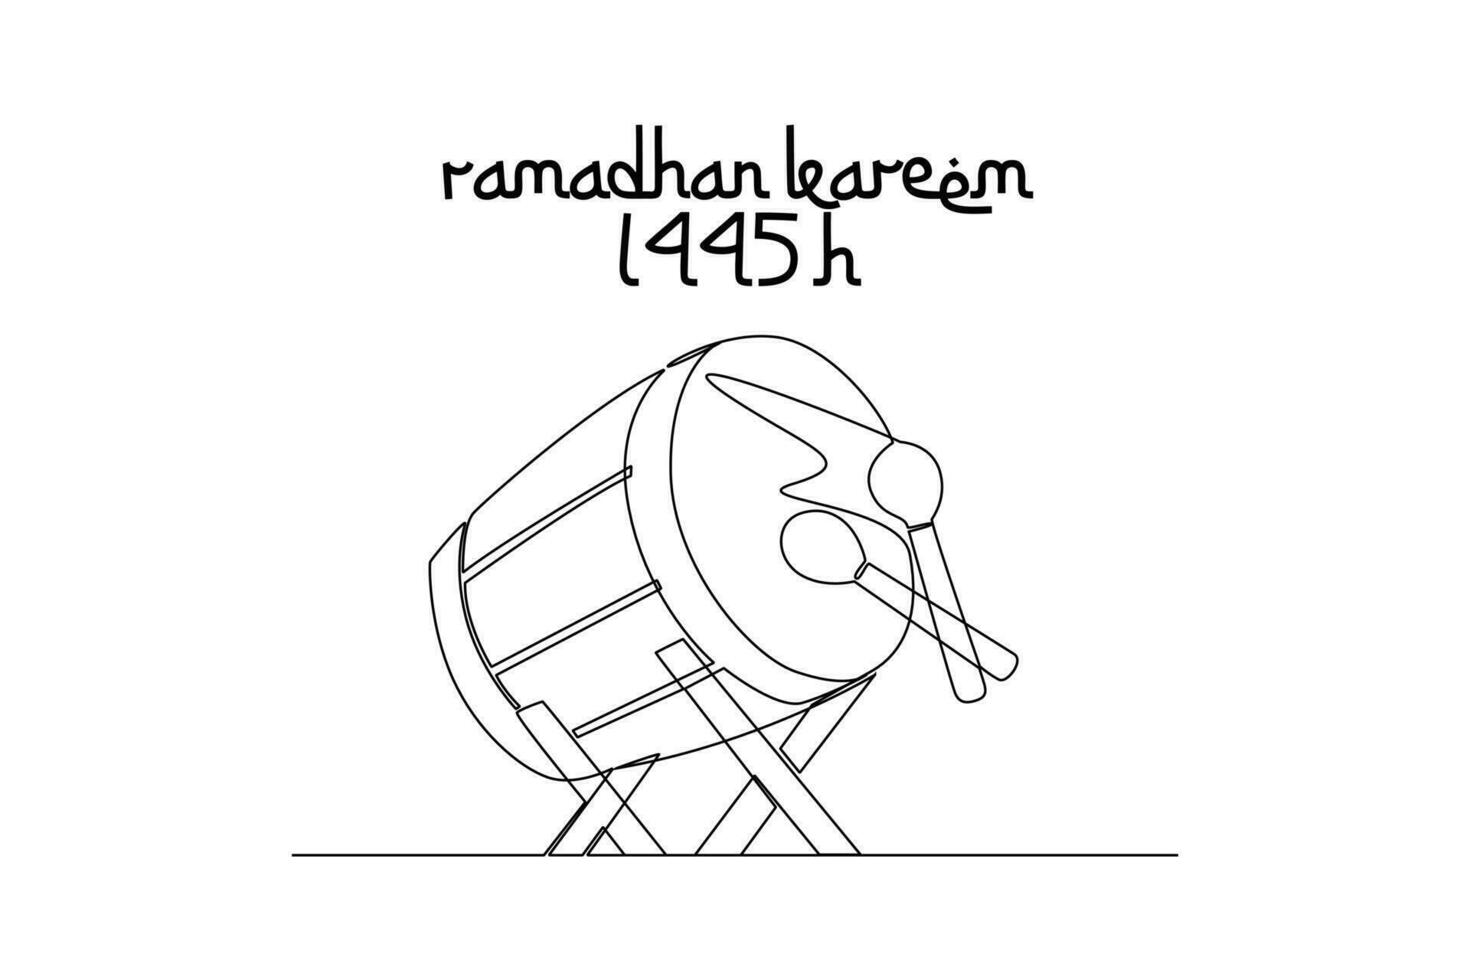 1 contínuo linha desenhando do acolhedor Ramadã conceito. rabisco vetor ilustração dentro simples linear estilo.